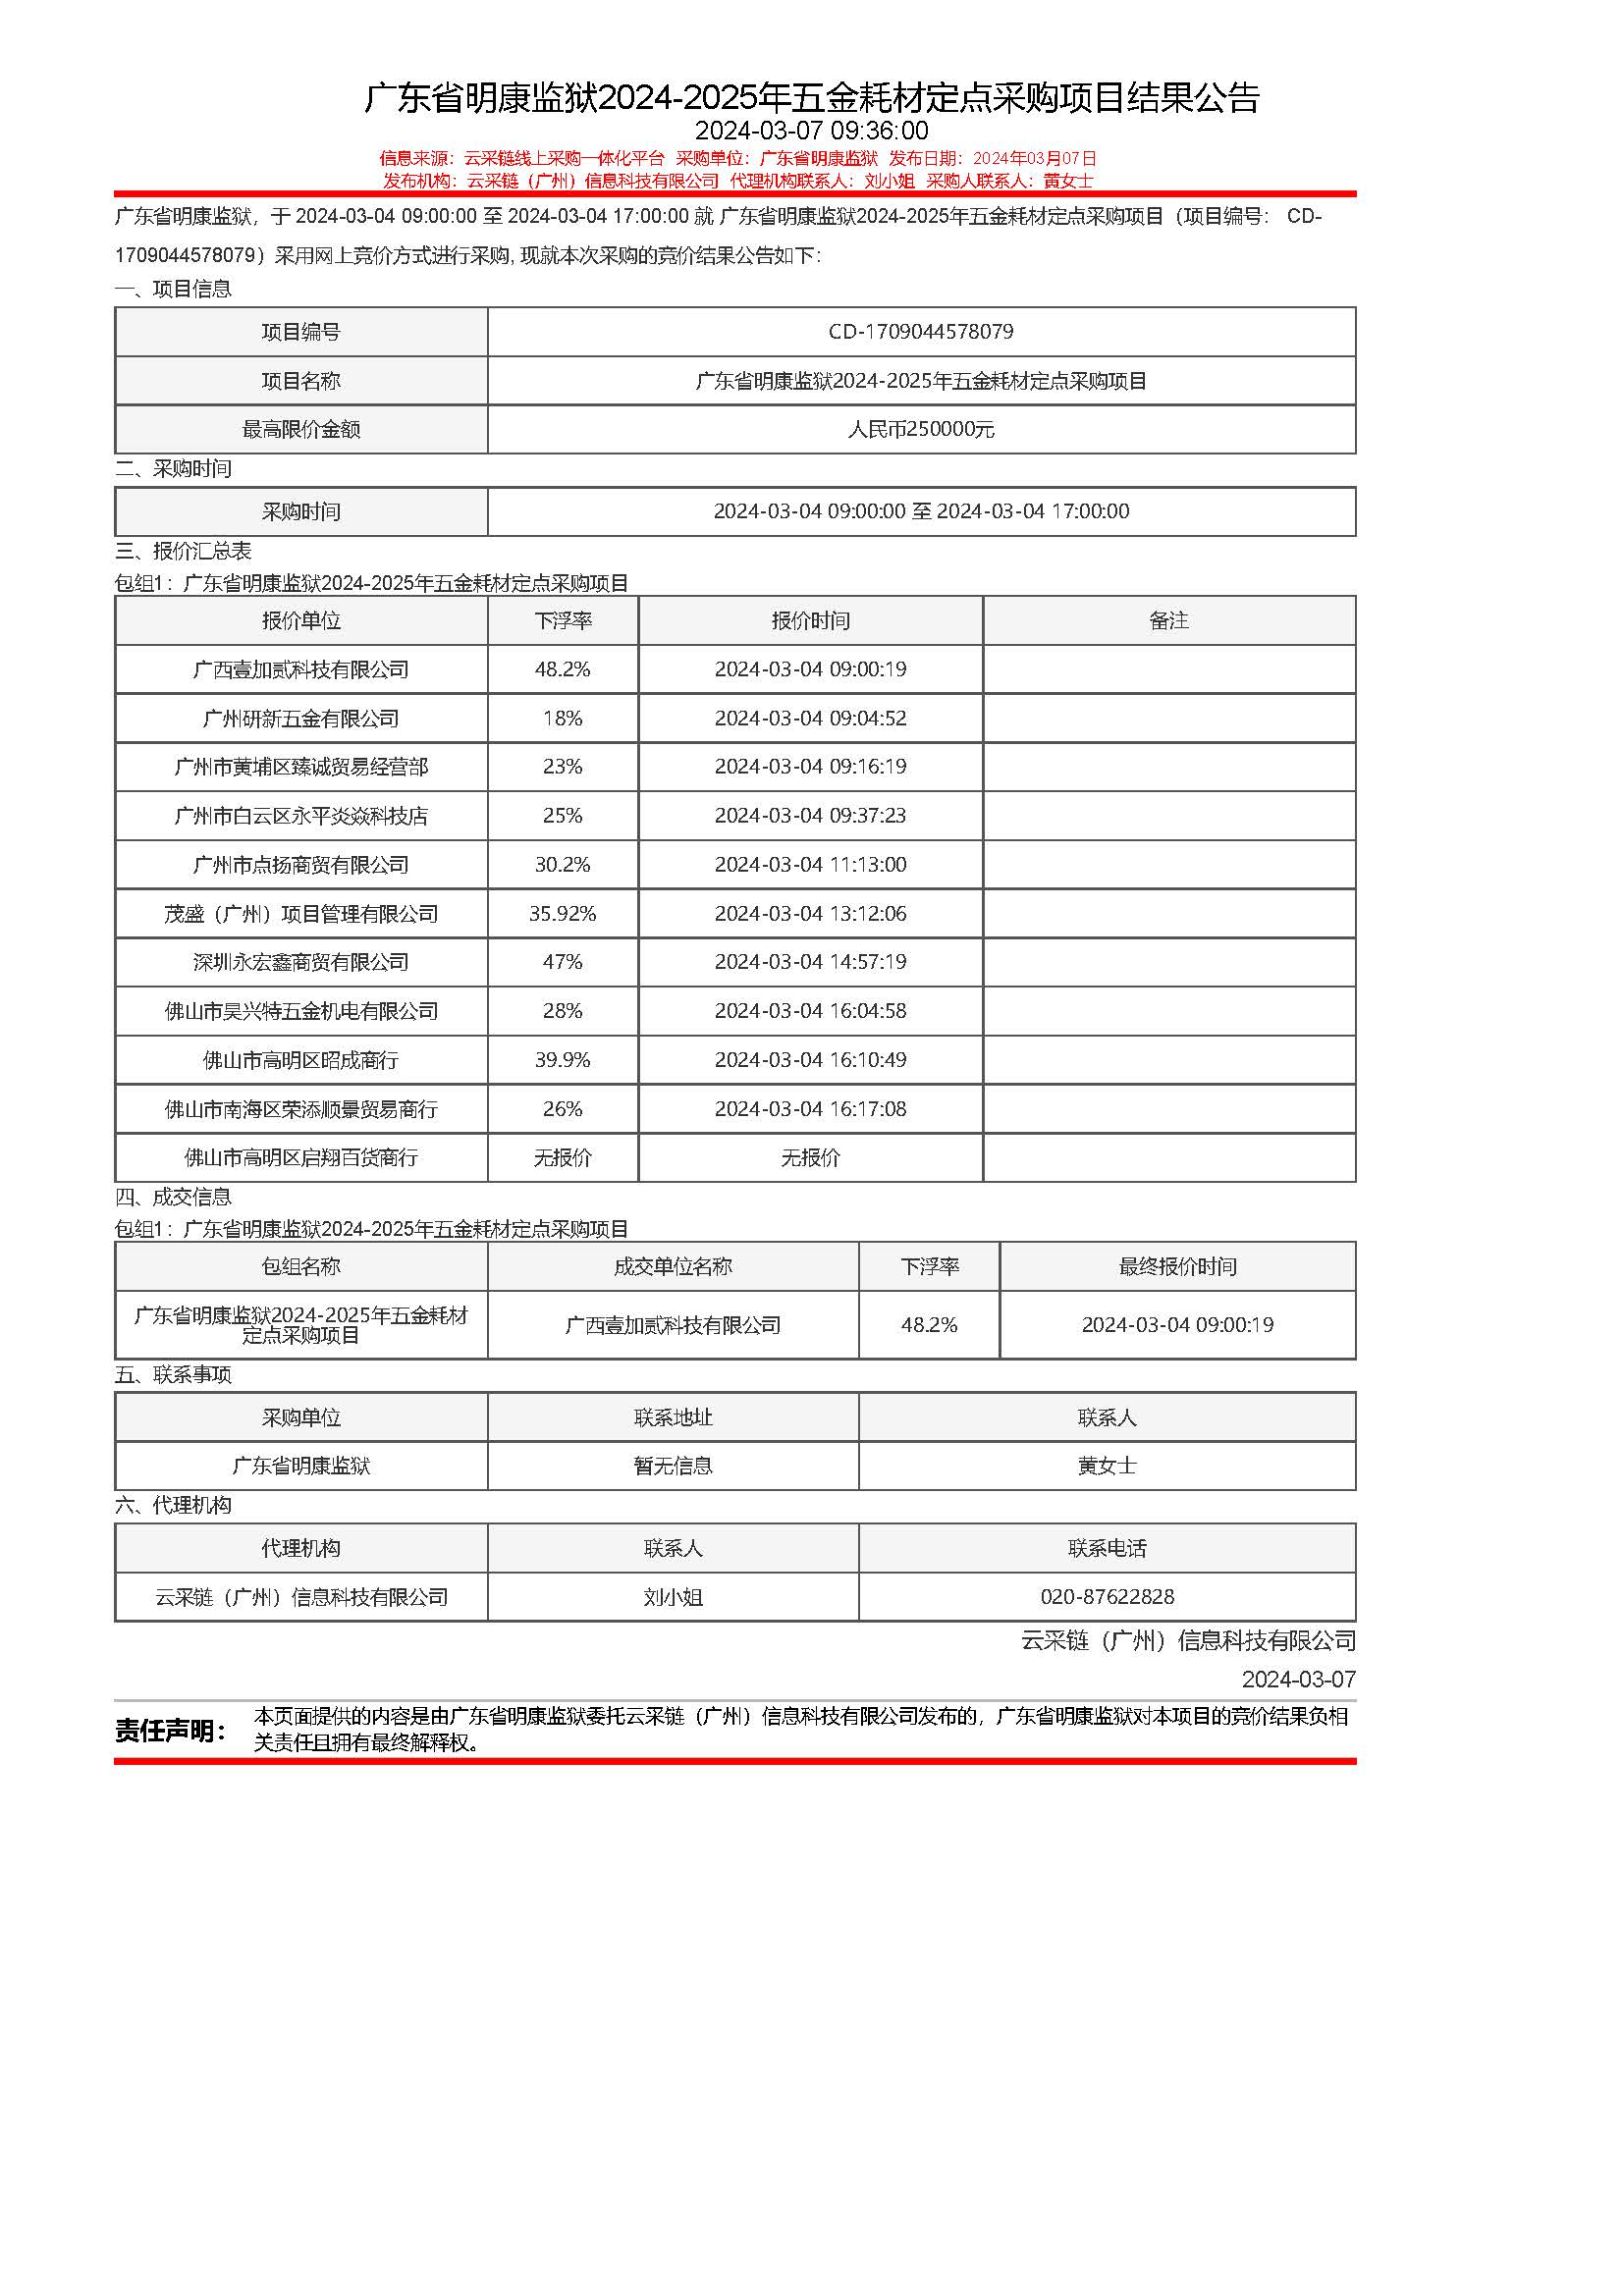 24.41广东省明康监狱2024-2025年五金耗材定点采购项目结果公告 (1).jpg